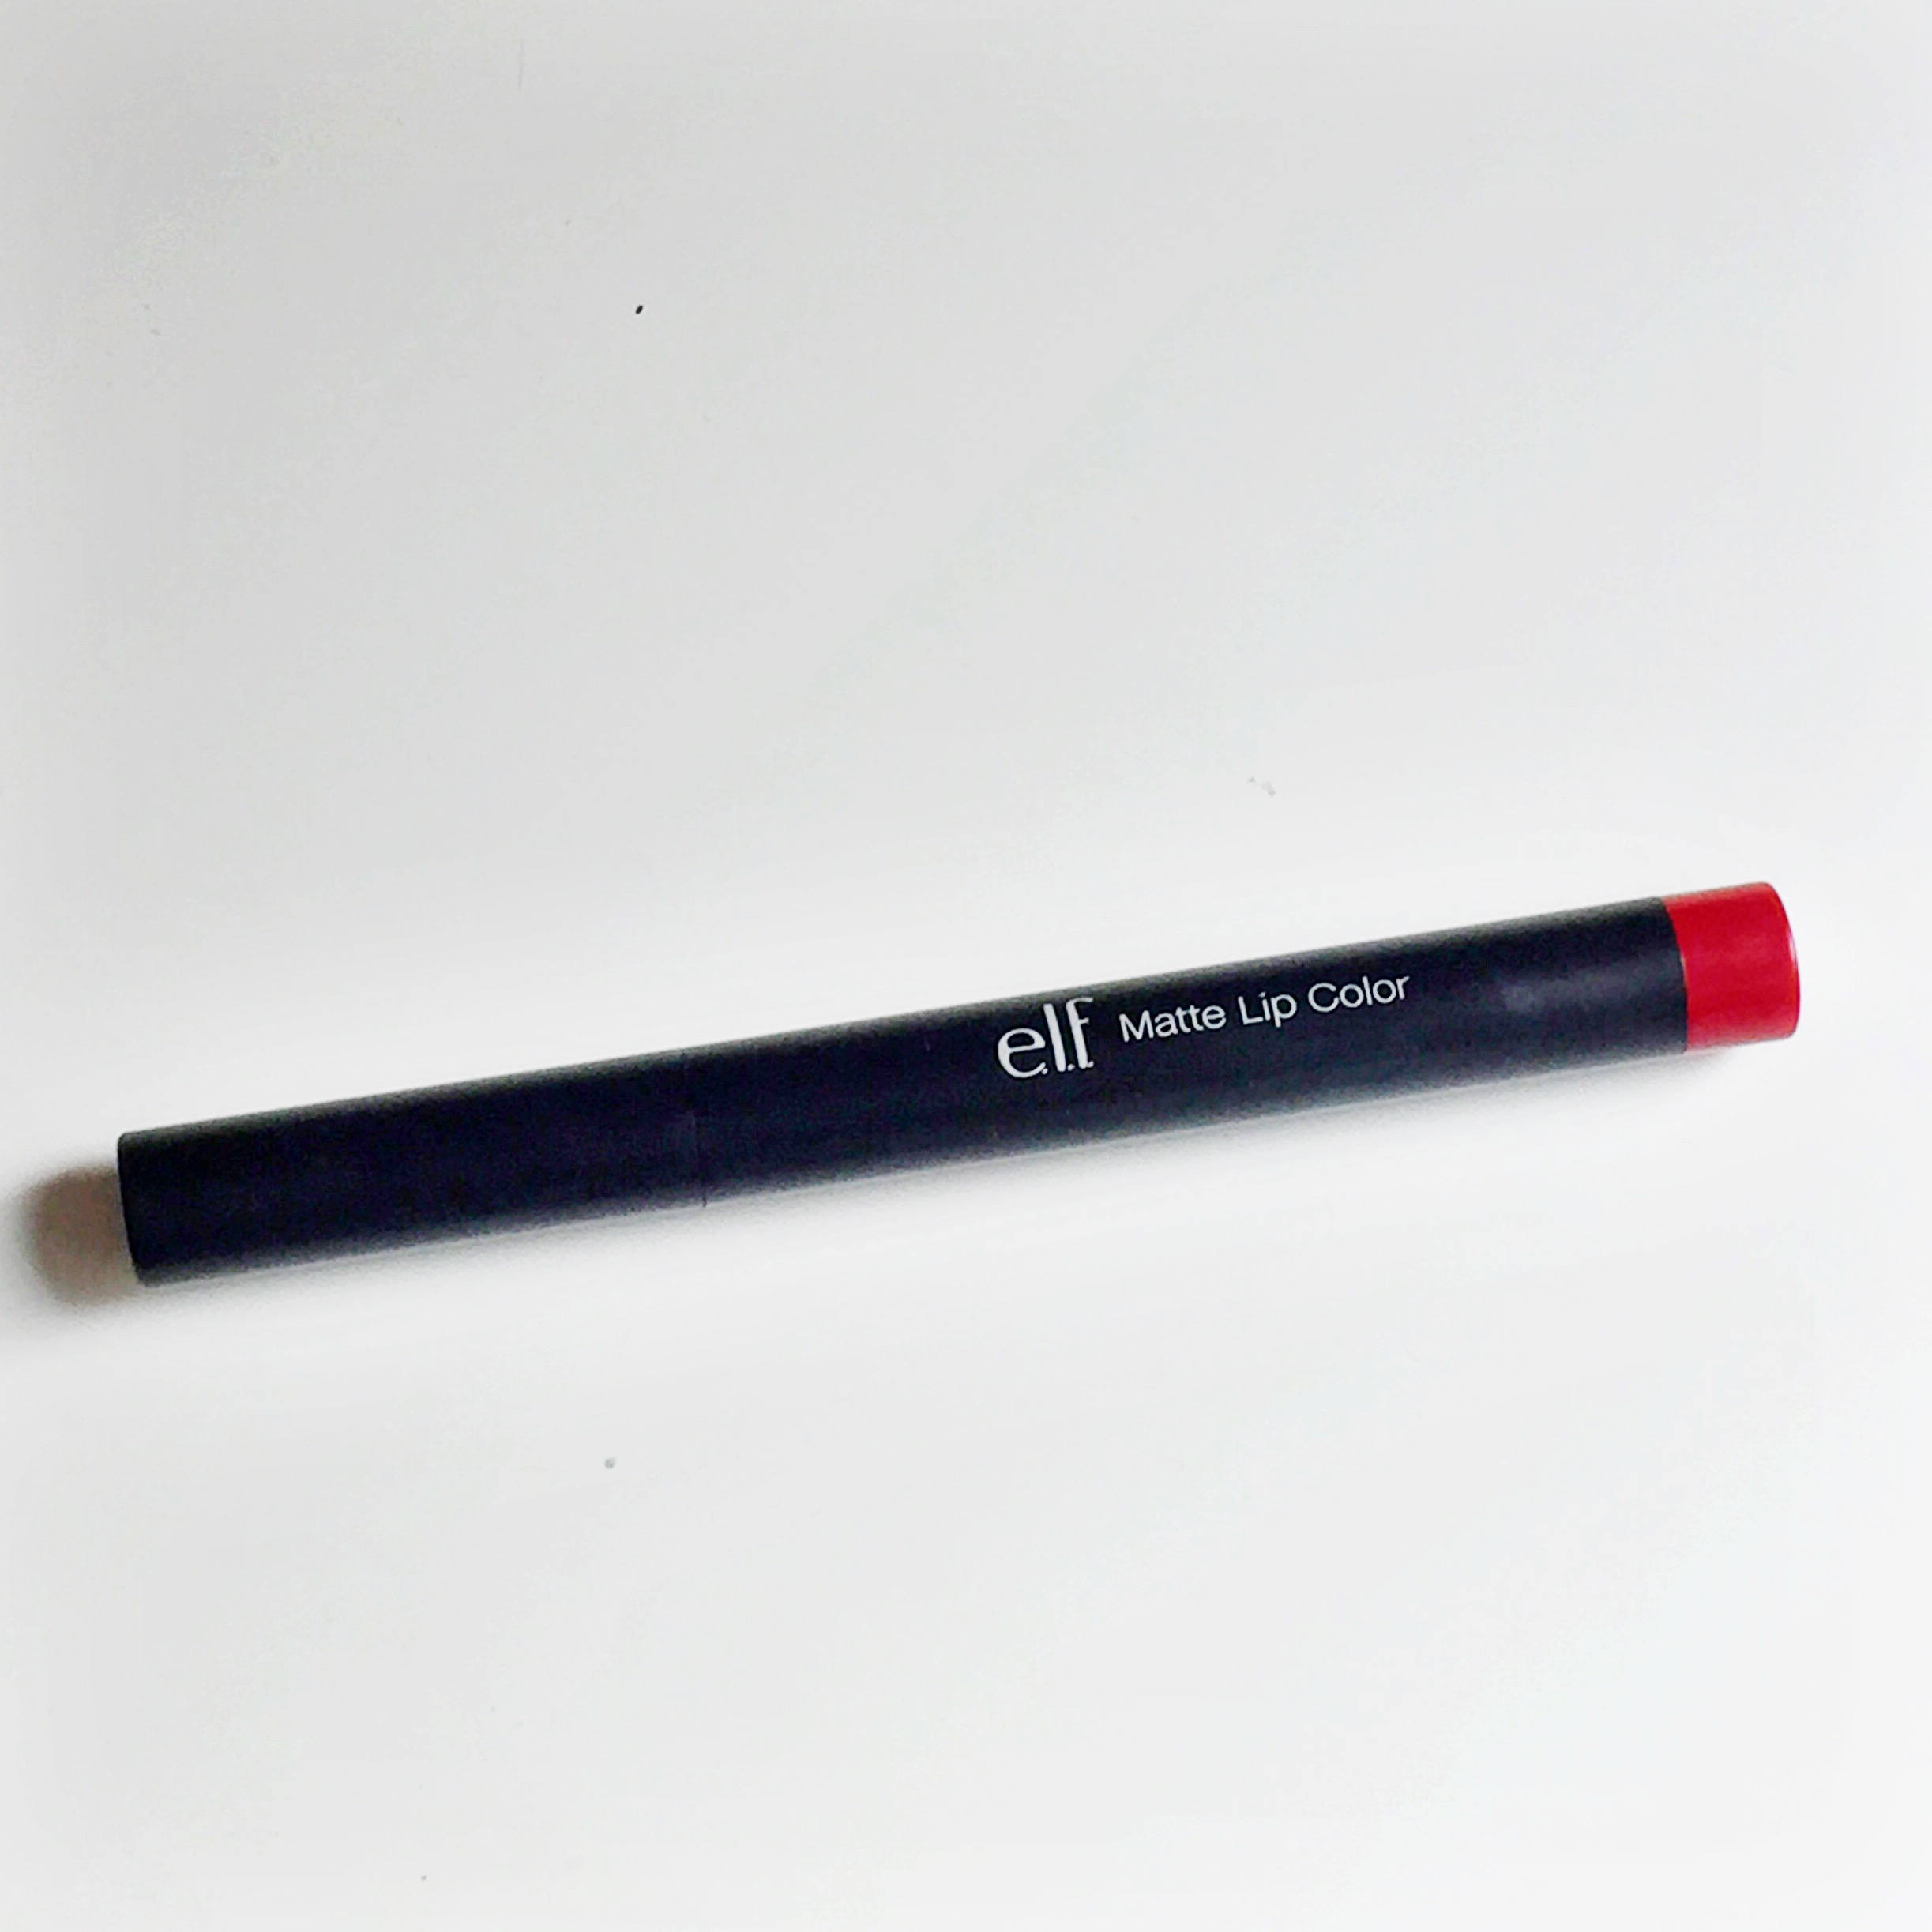 Elf matte lip color rich red